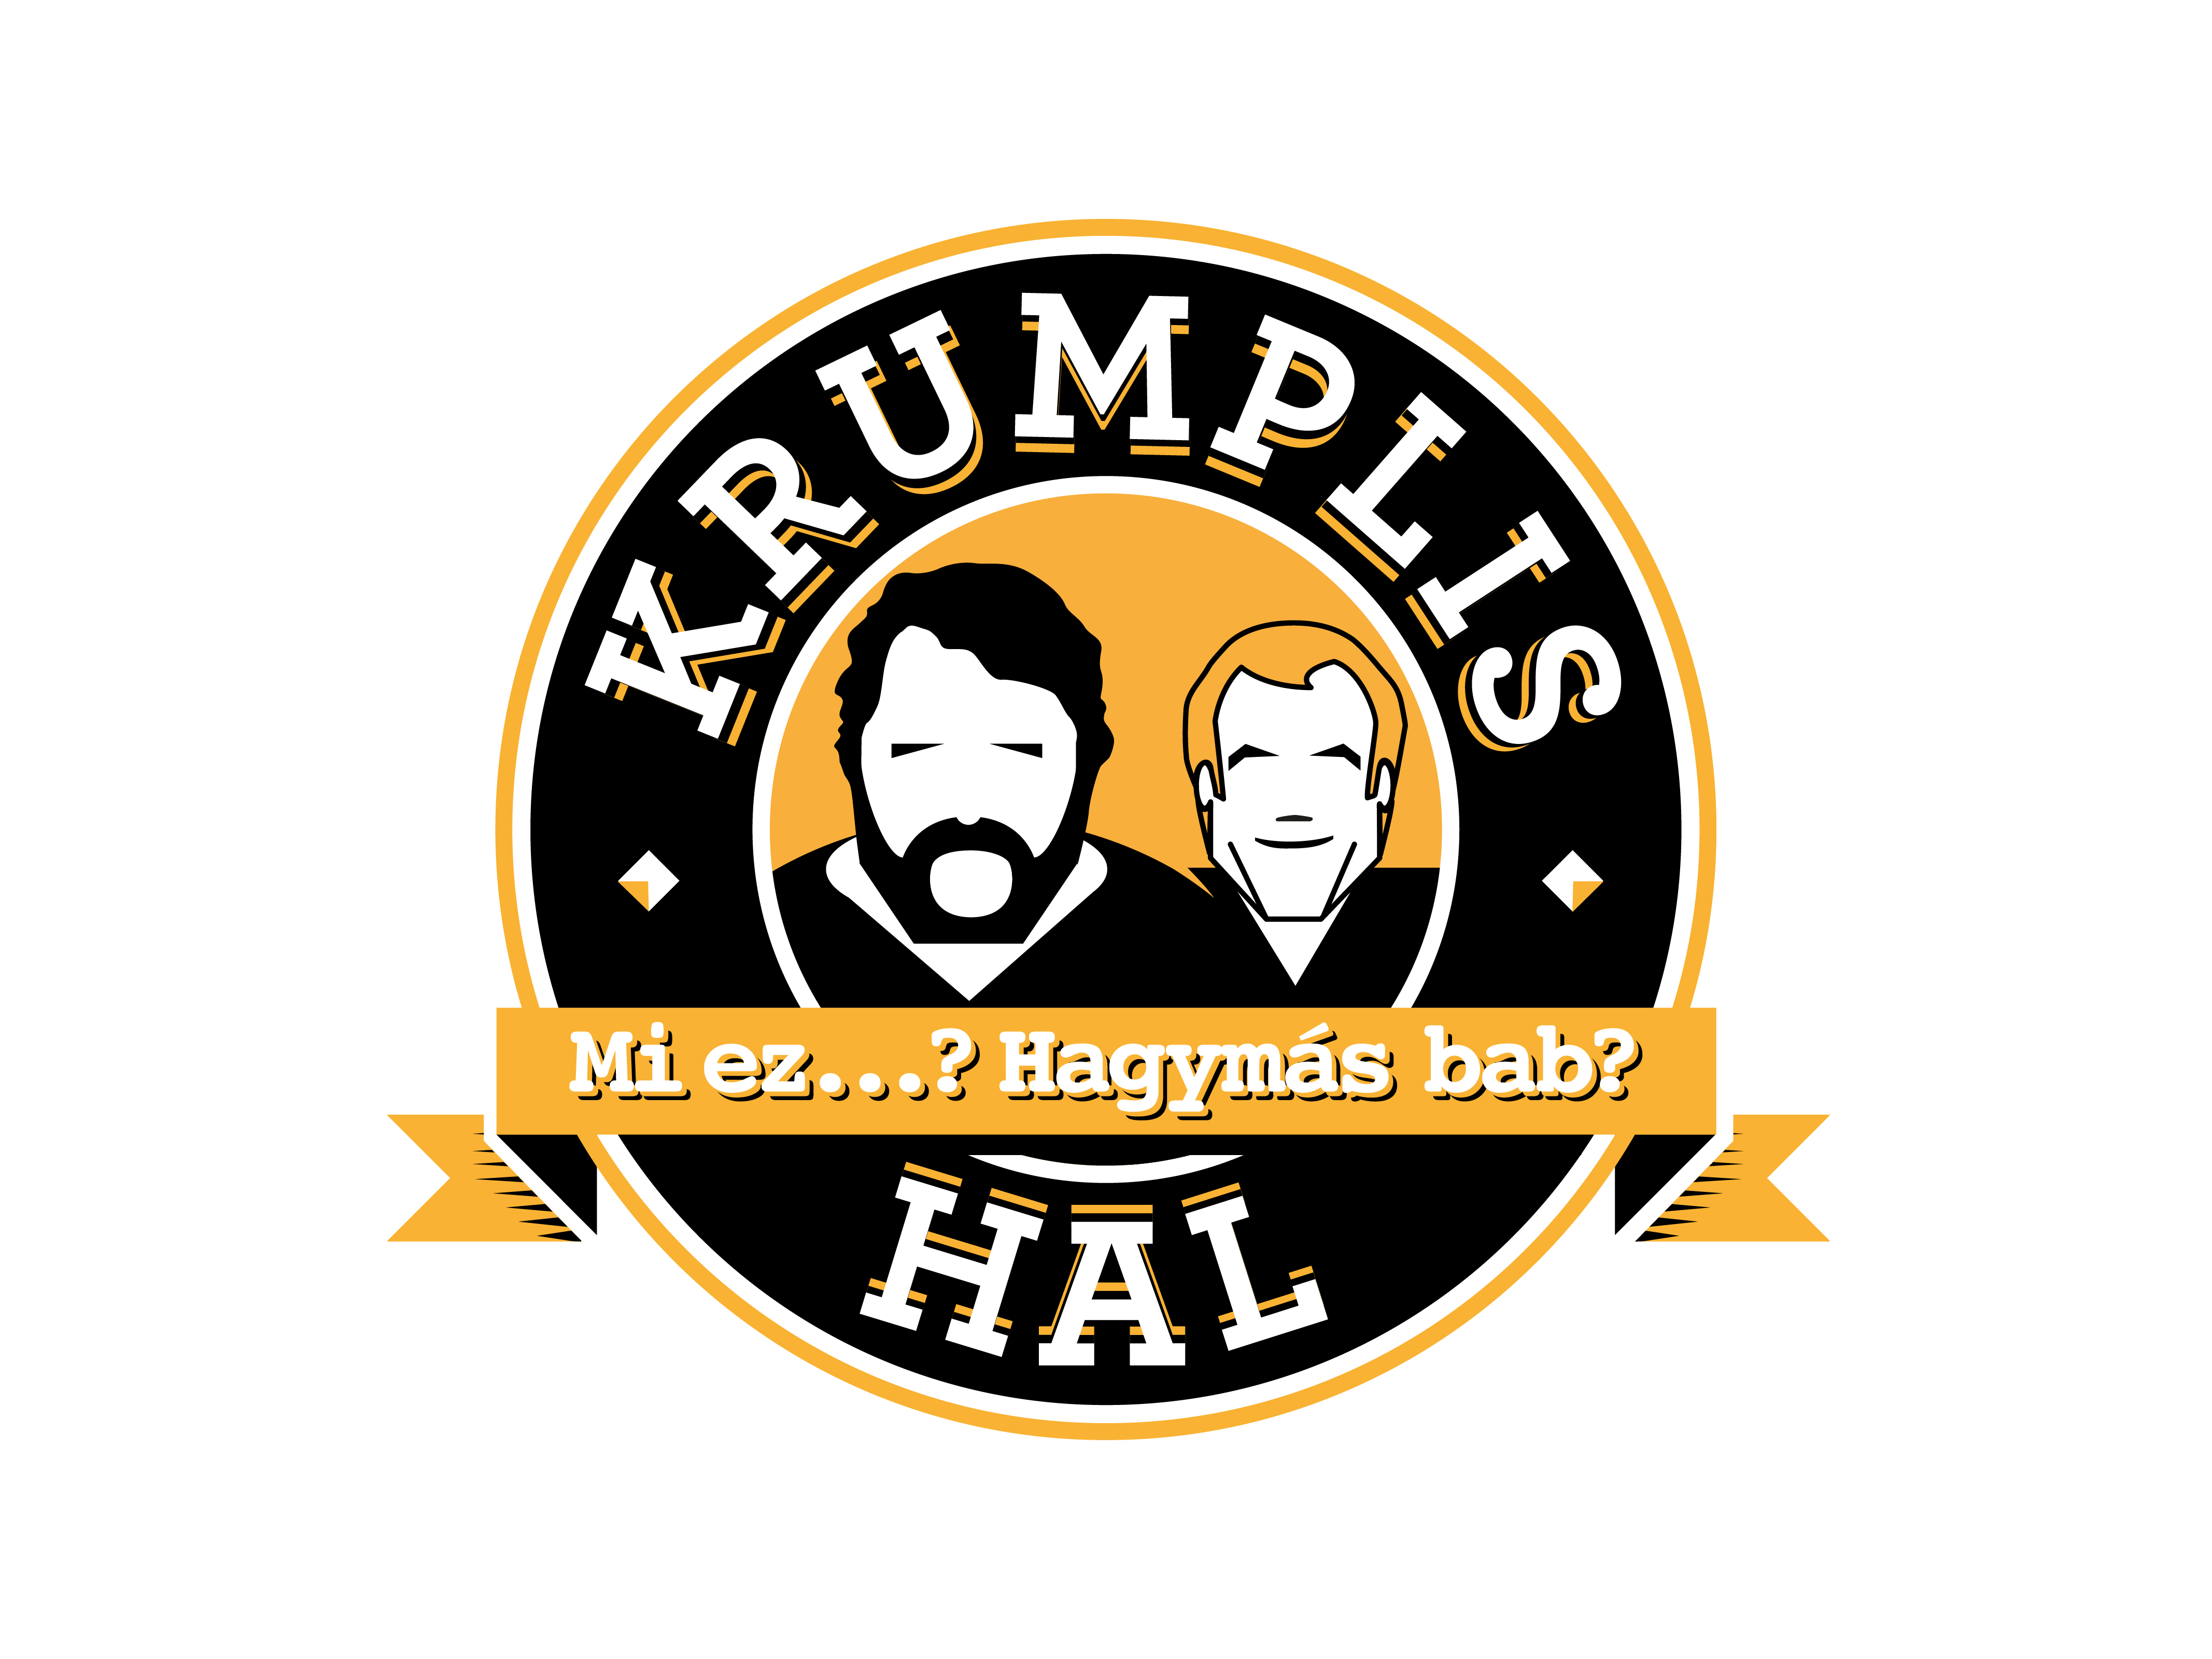 Krumlishal-logo_FINAL-2c-01-01_1.jpg